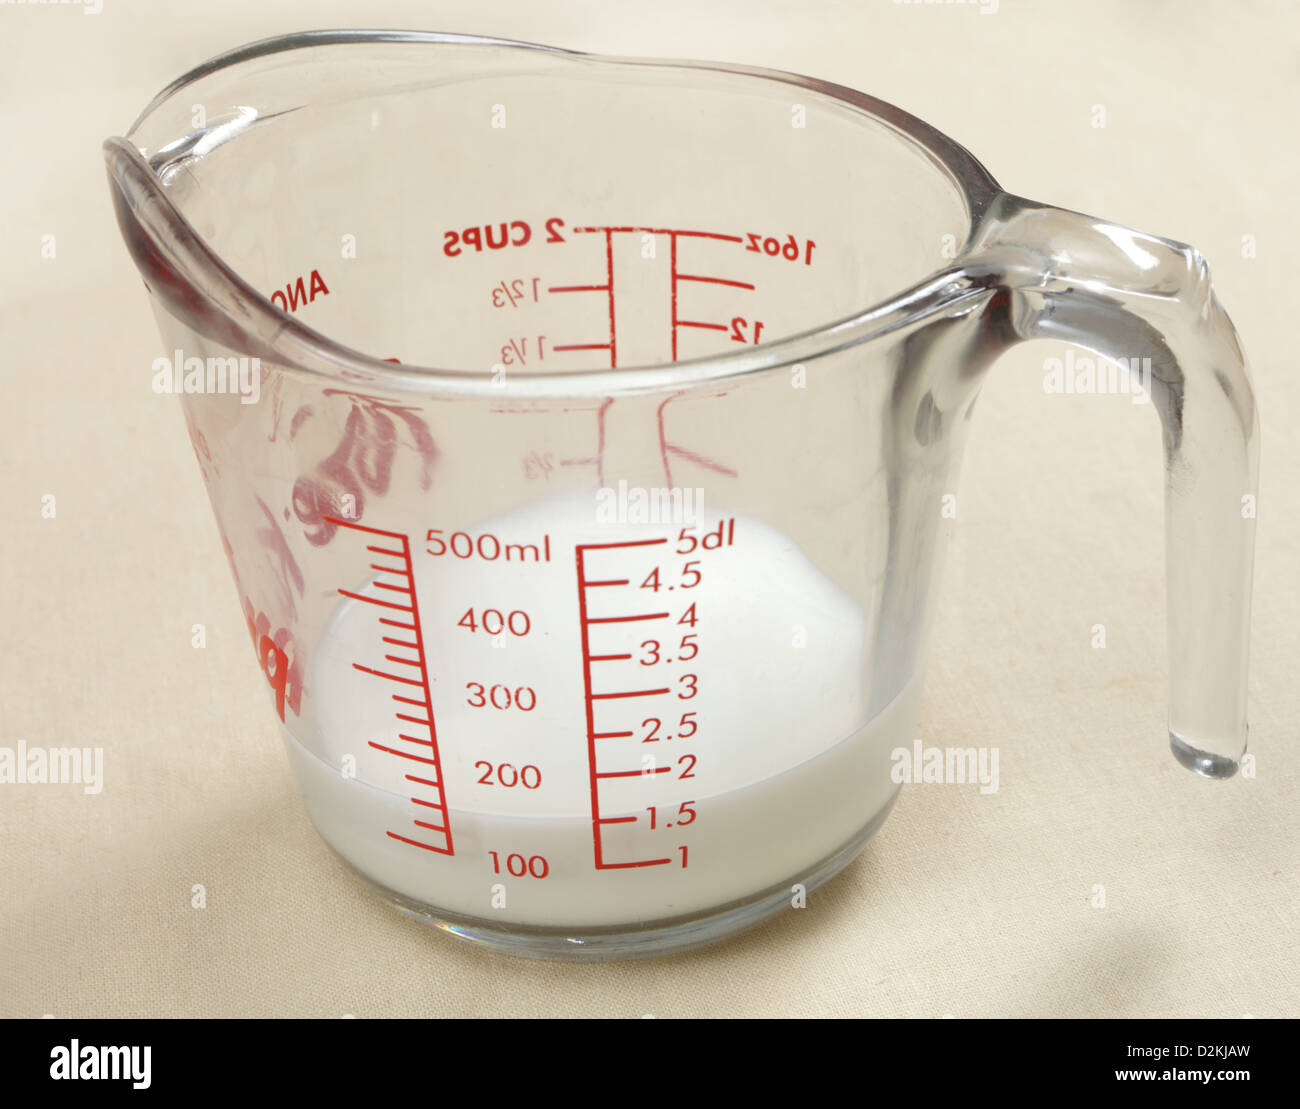 400 гр это сколько стаканов. 3/4 Стакана в граммах. Молоко 150 миллилитров это. 100 Гр молока в мл. 150 Мл воды в кружке.